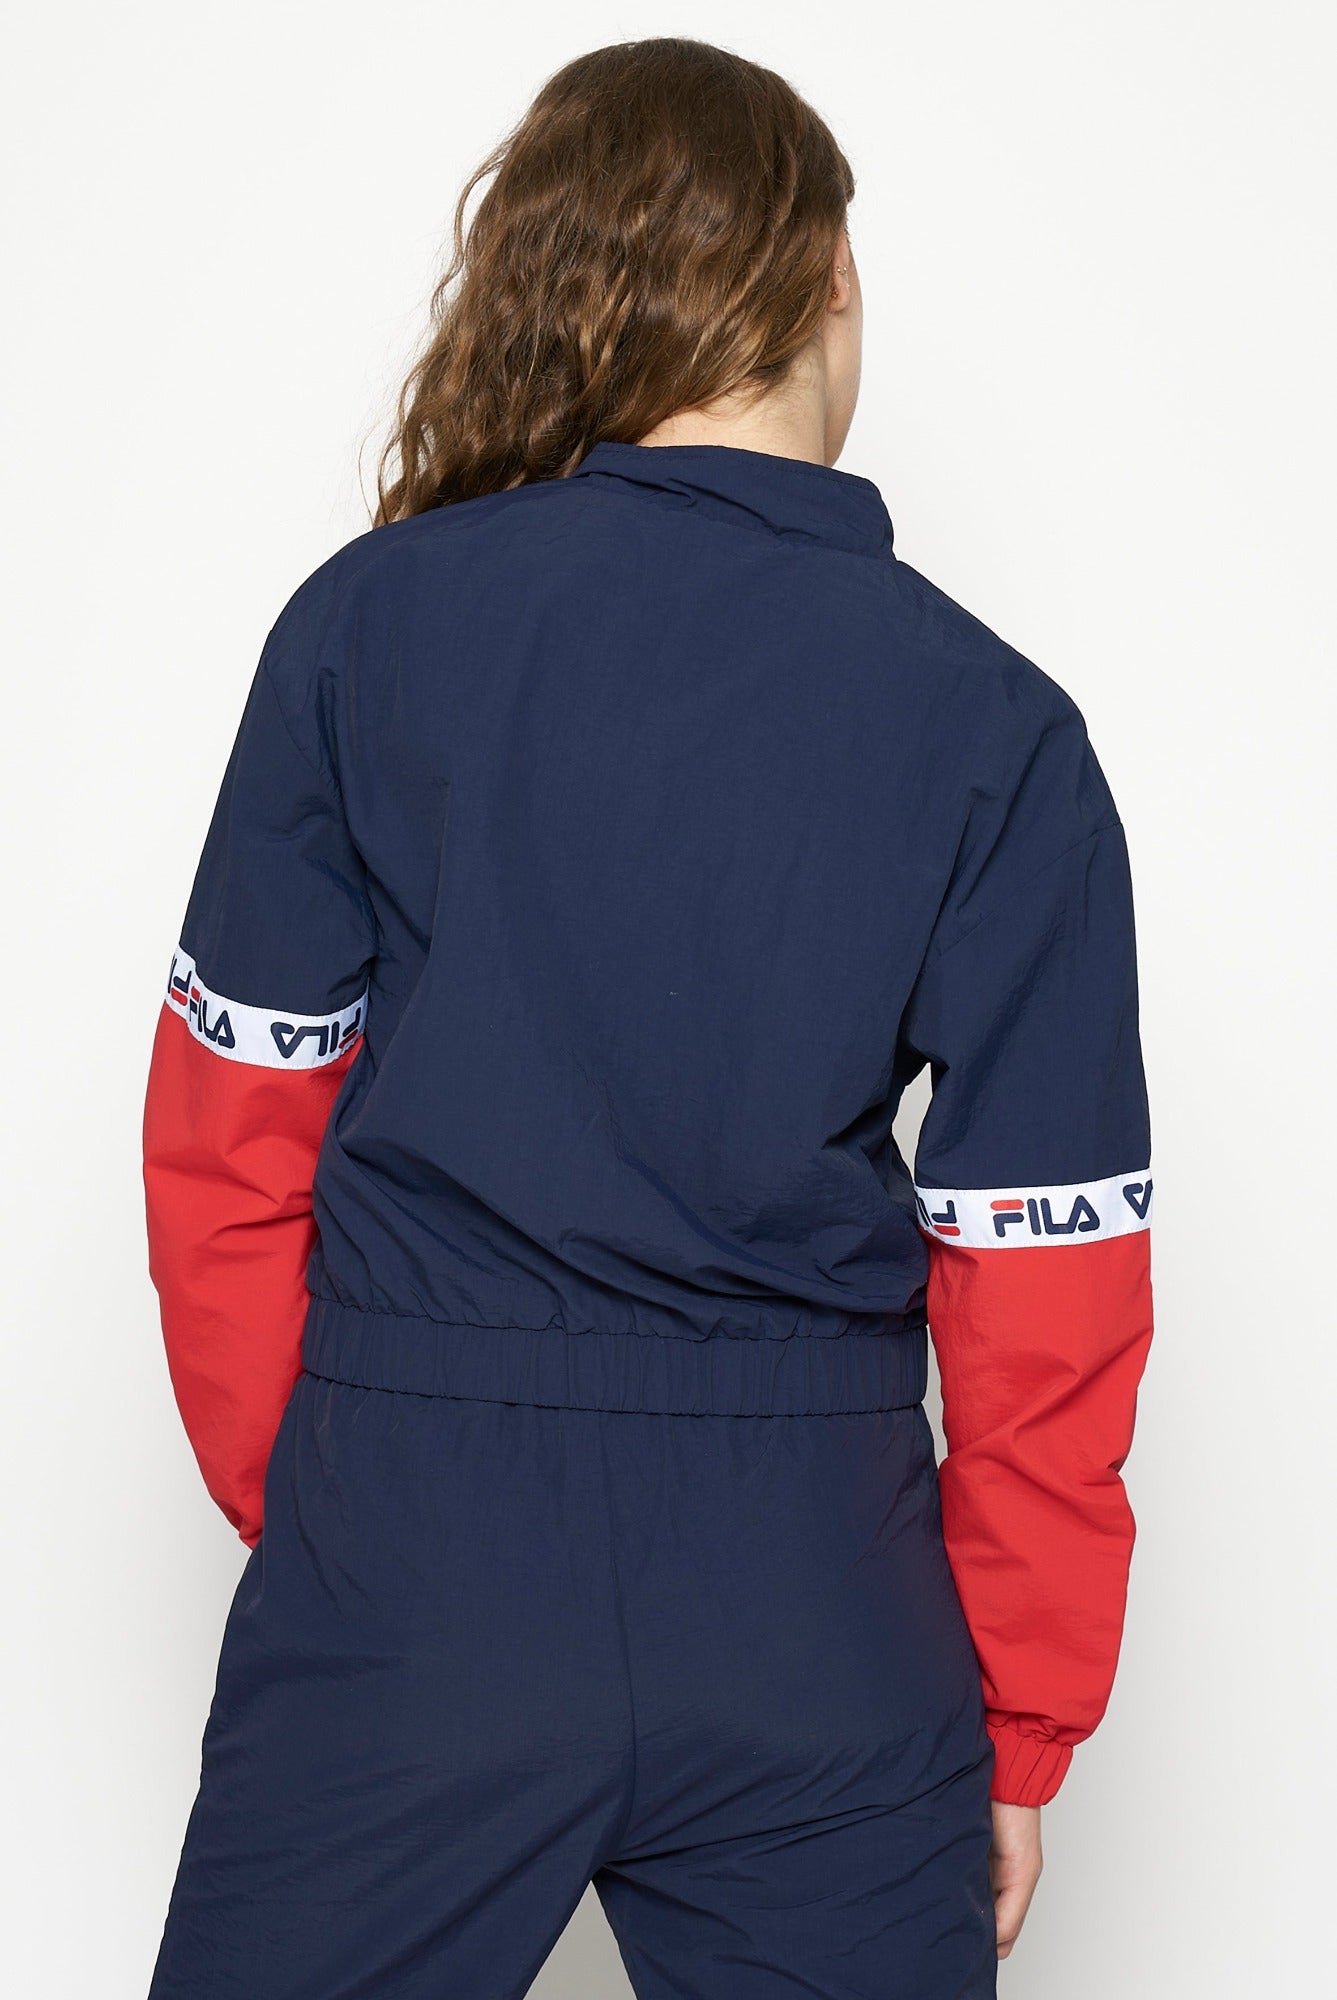 FILA Women's Skylar Jacket